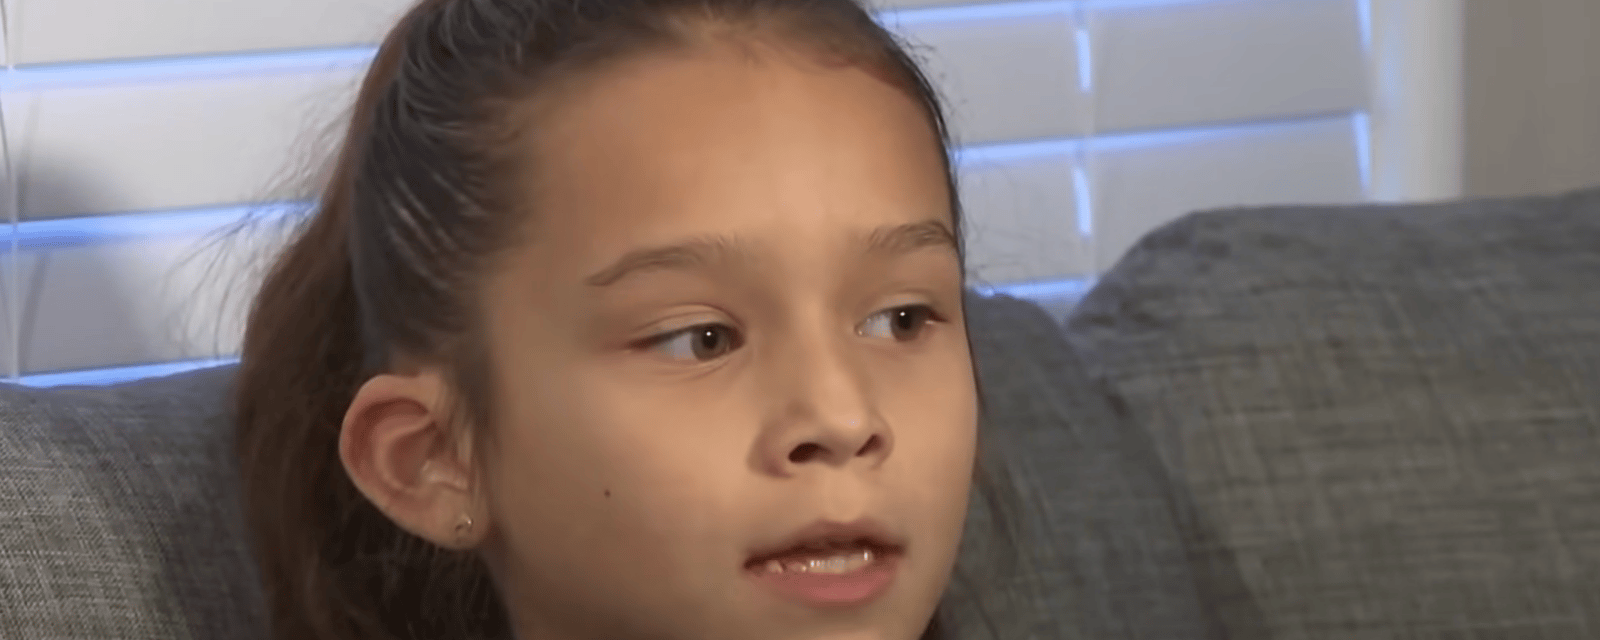 Une fillette de 8 ans tient tête à des voleurs de voiture et sauve la vie de sa petite soeur